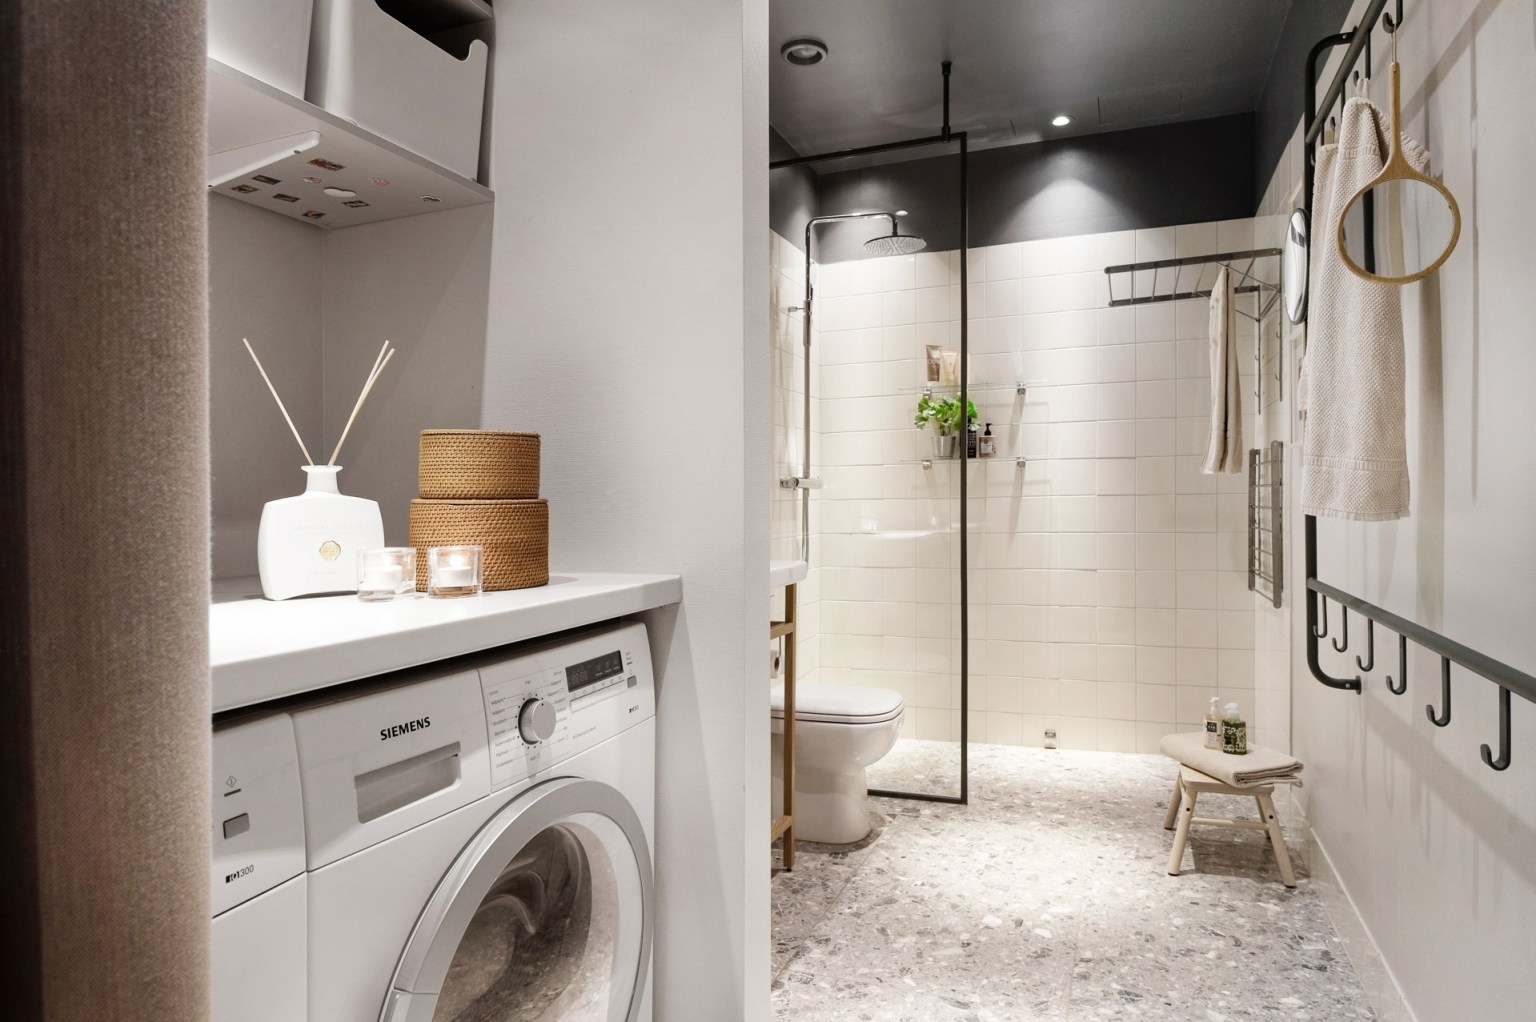 Phòng tắm thiết kế không thua kém gì một khách sạn hạng sang với sàn nhà lát đá tương tự ở phòng bếp, tích hợp góc giặt là gọn gàng tiện ích.